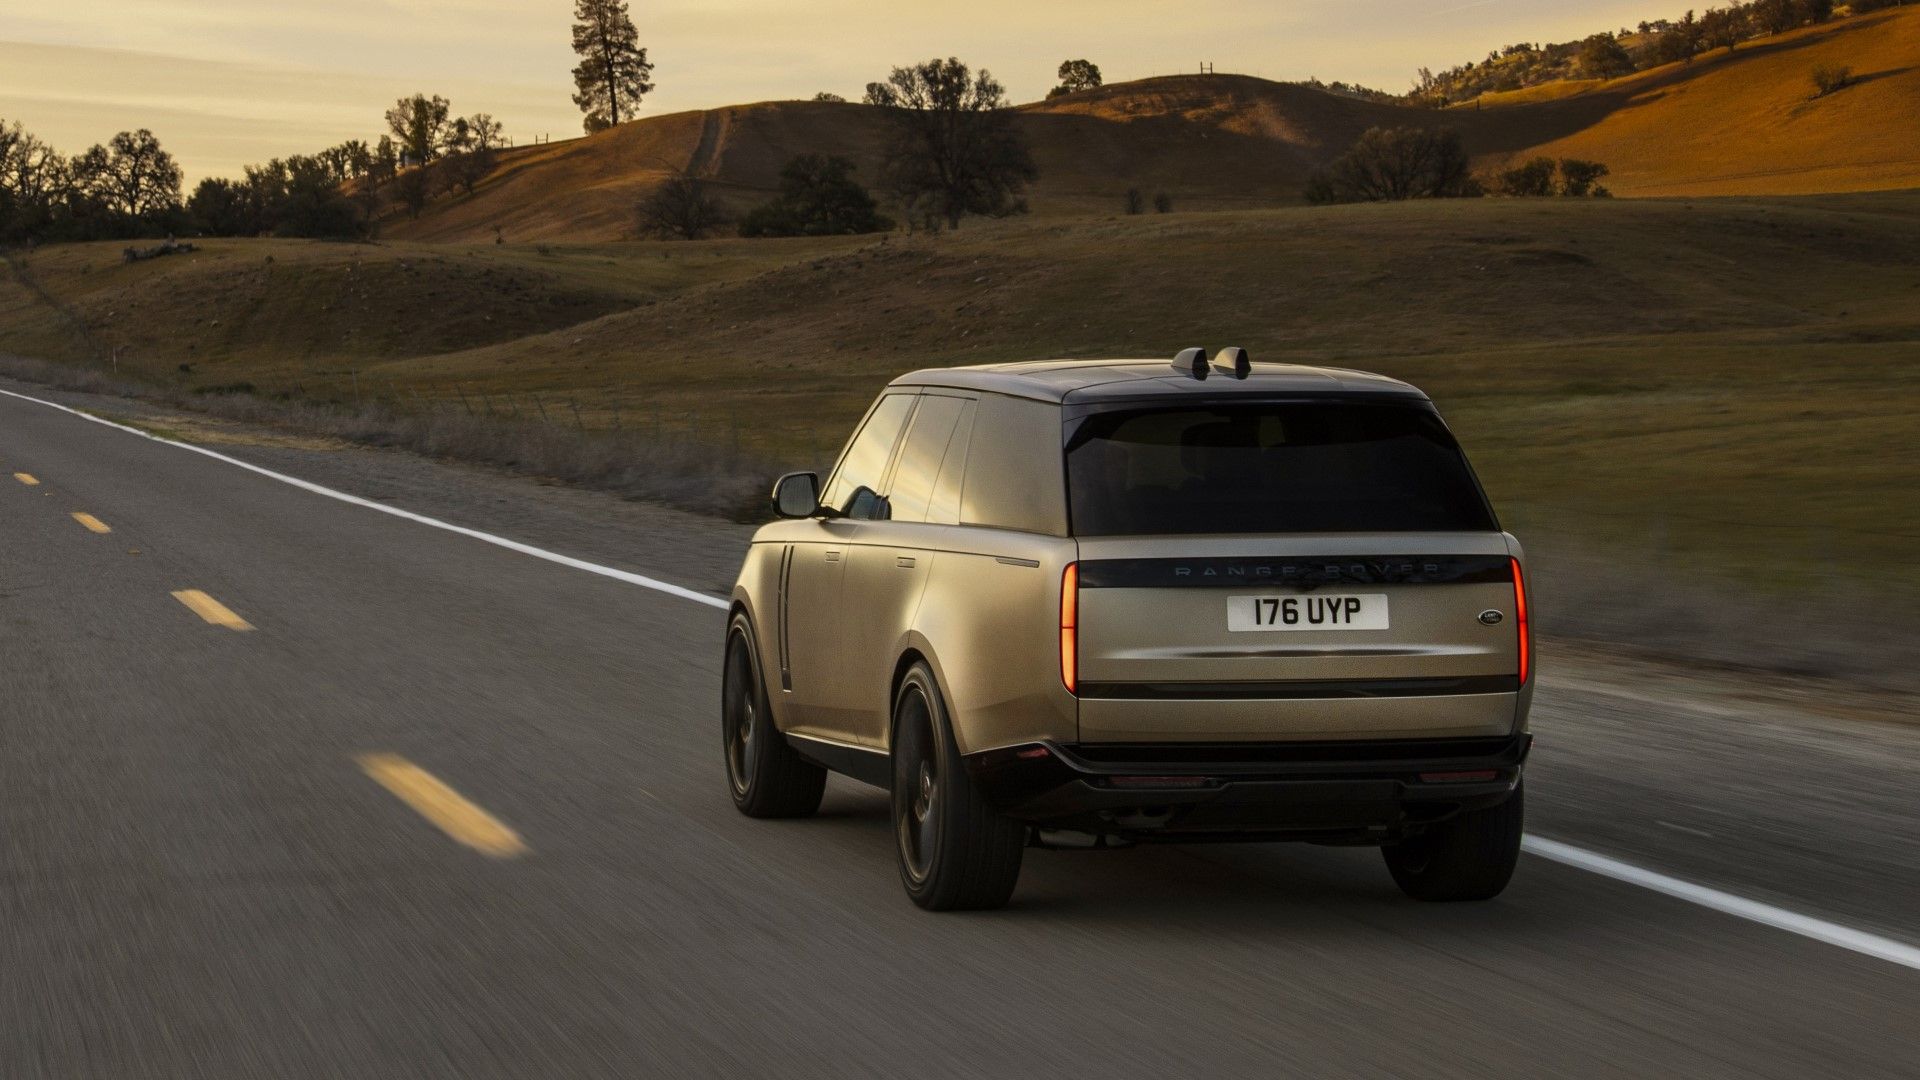 Σχεδιαστική αριστεία για το νέο Range Rover